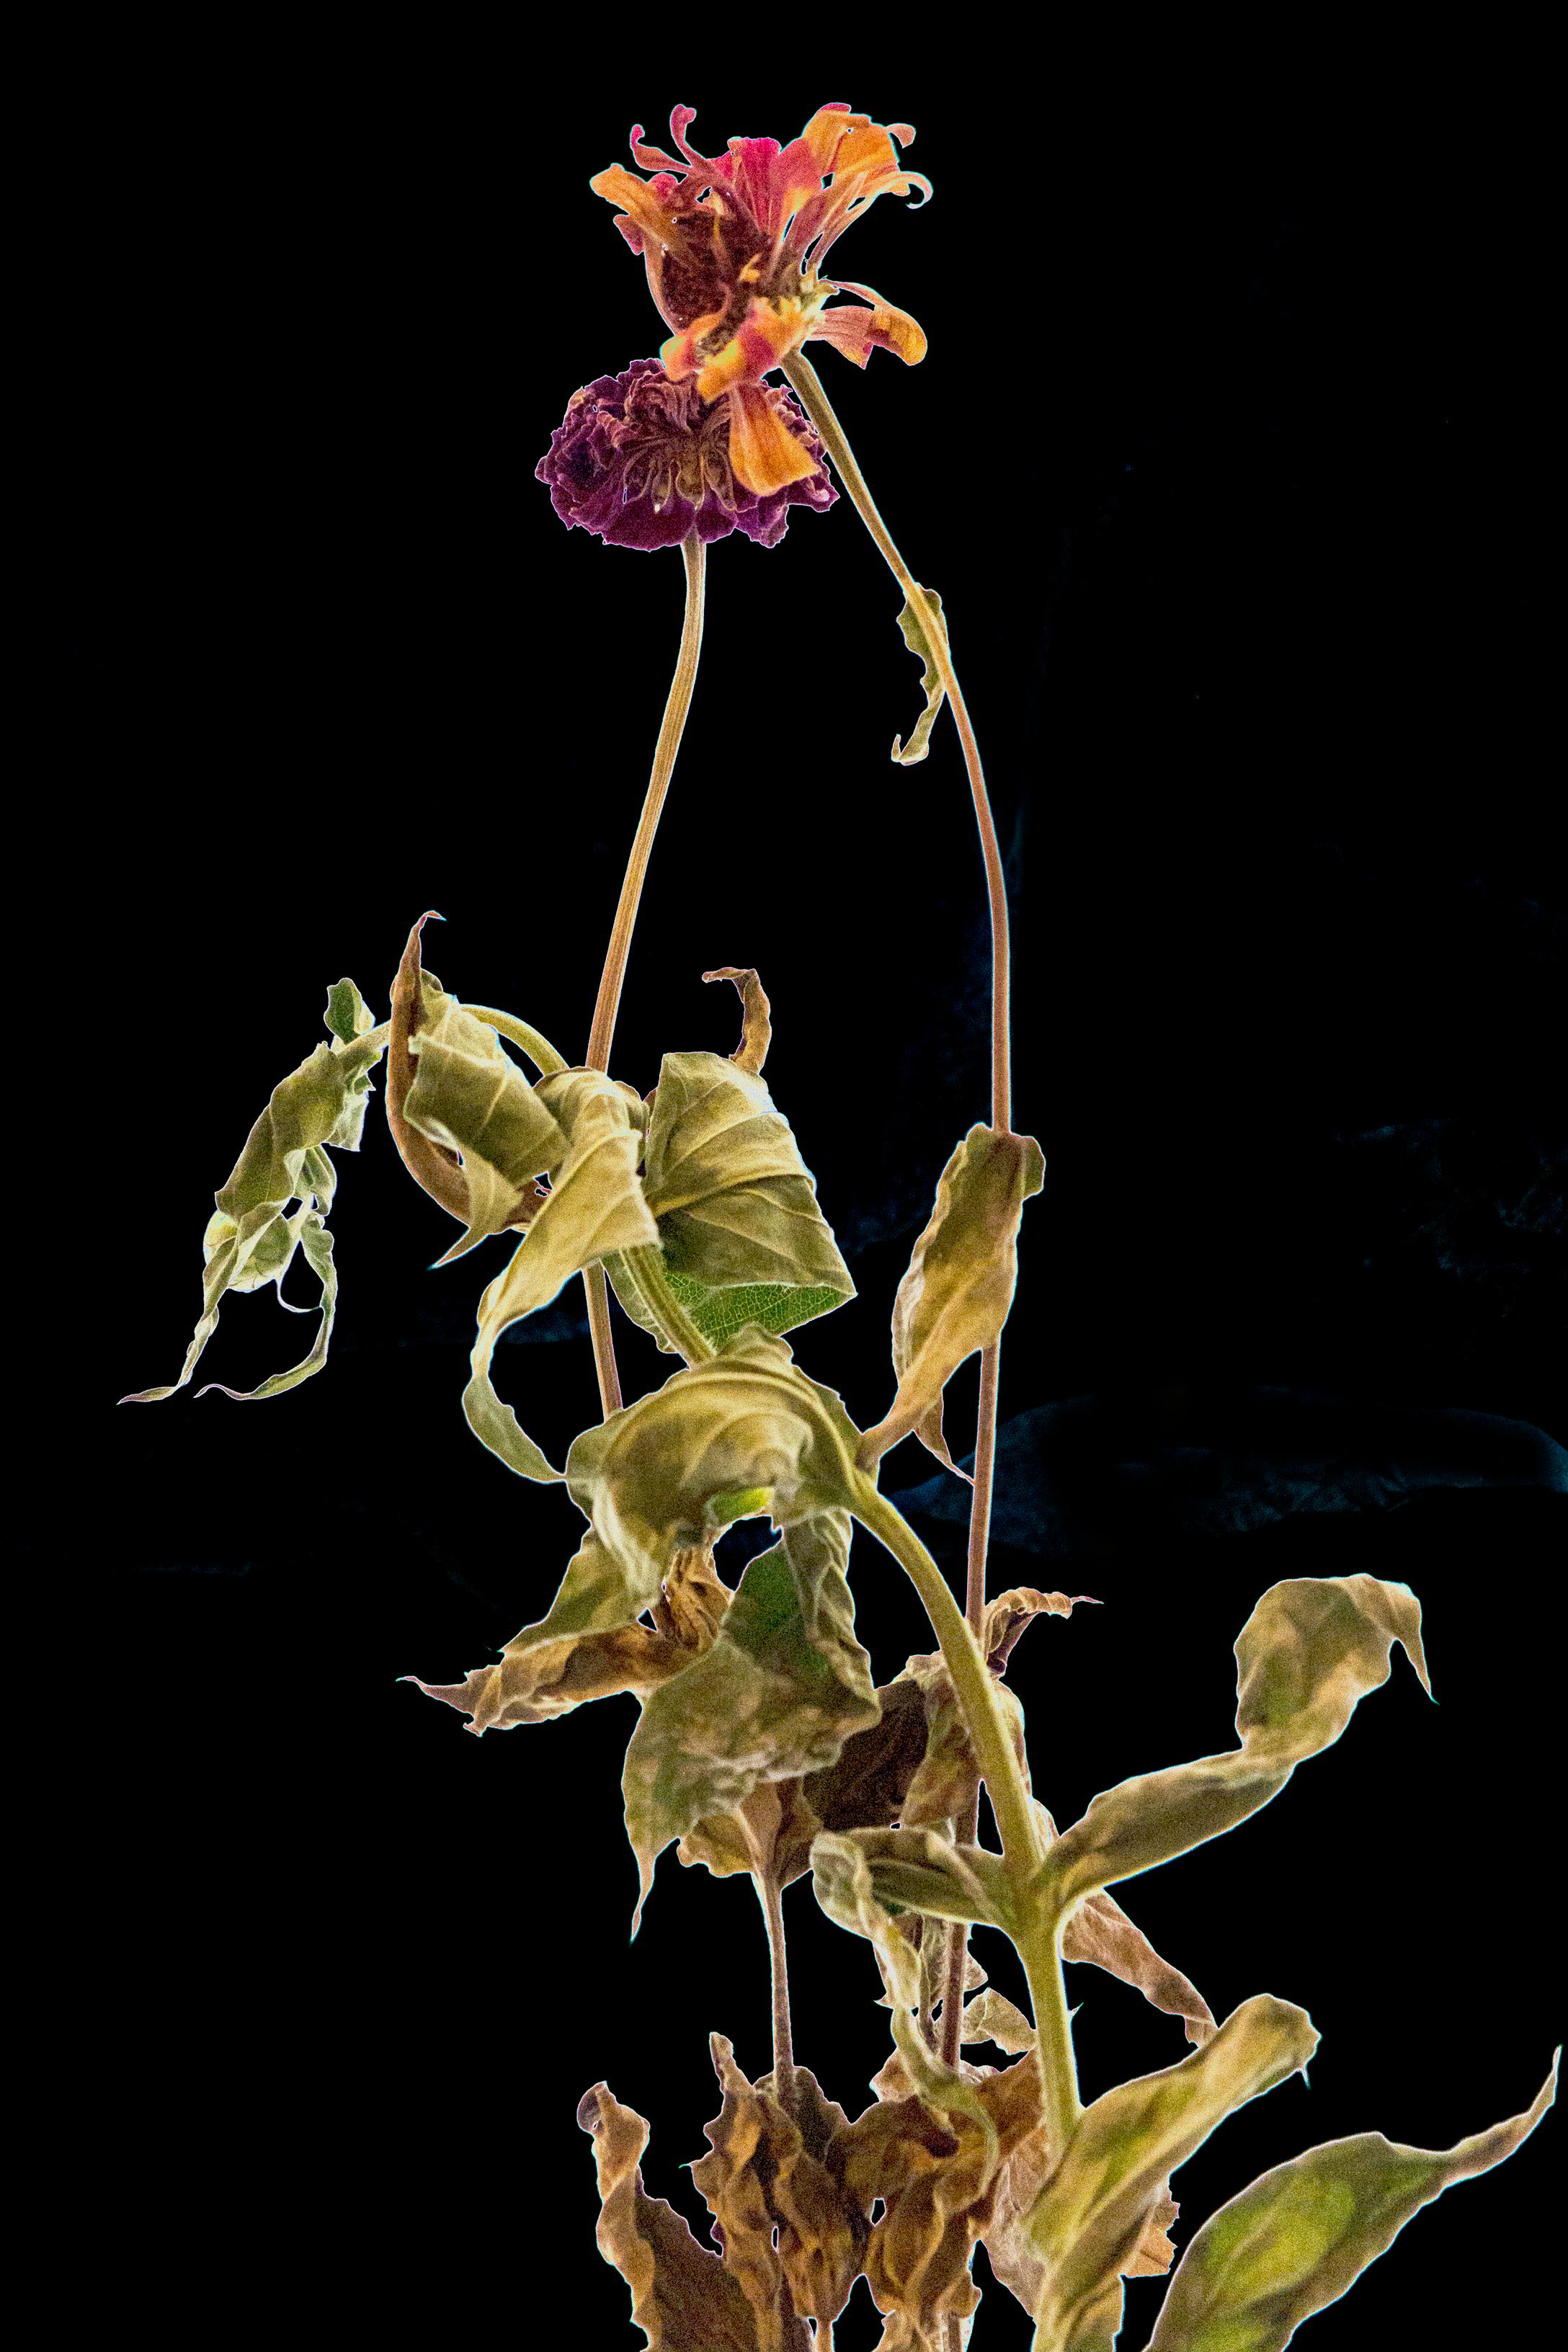 Blumenstudie 13: Stillleben-Farbfotografie mit getrockneten Blumen auf schwarzem Feld, lg